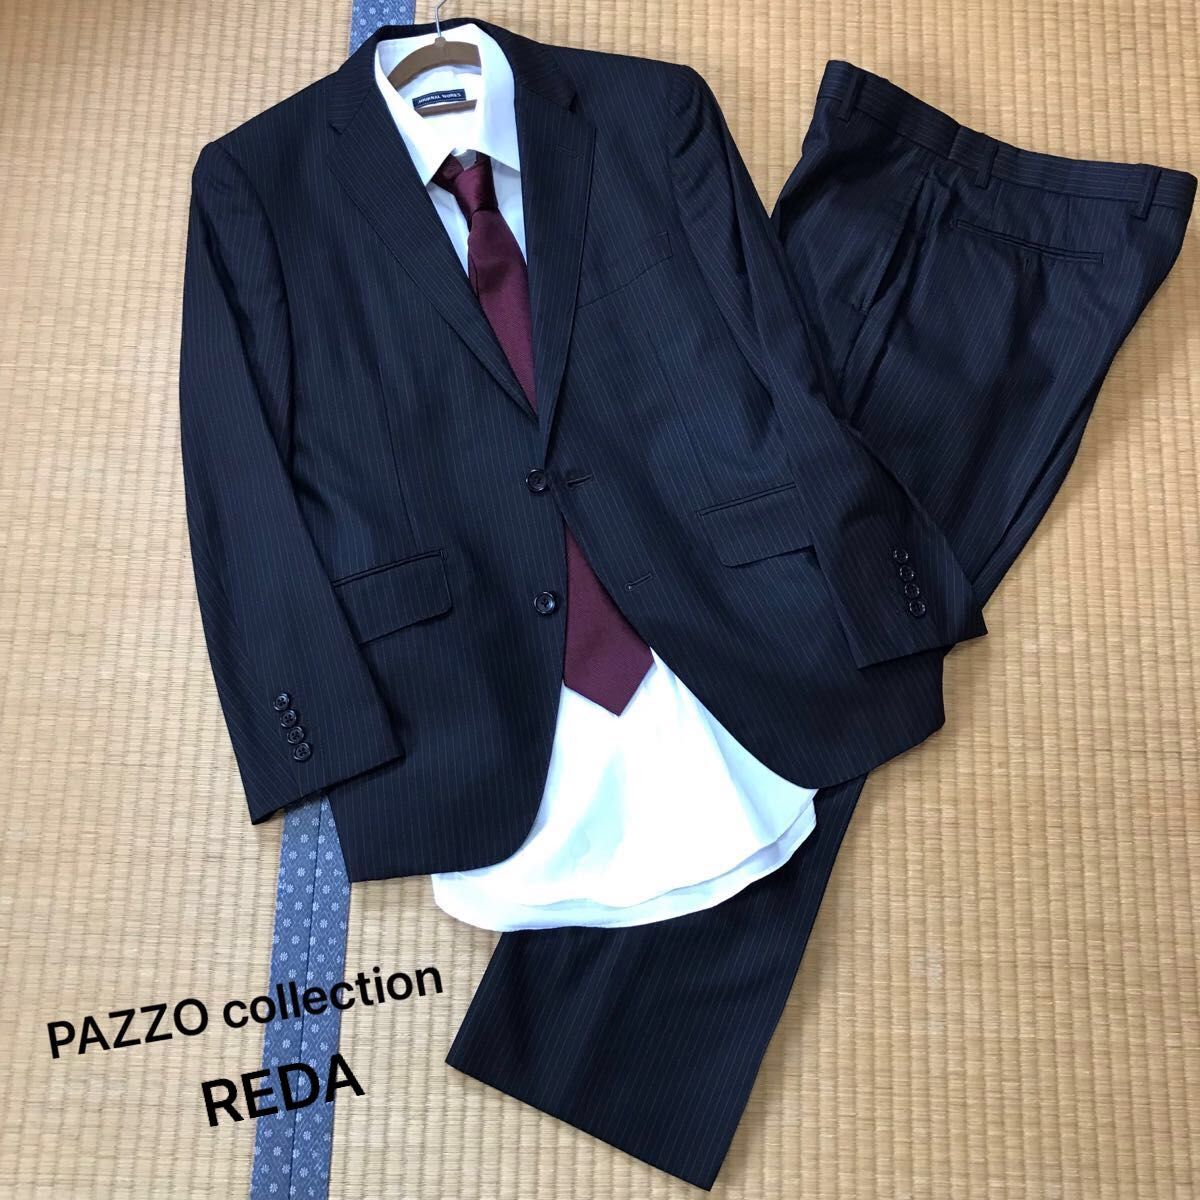 PAZZO collection パッゾ コレクション REDA レダ スーツ セットアップ フォーマルスーツ